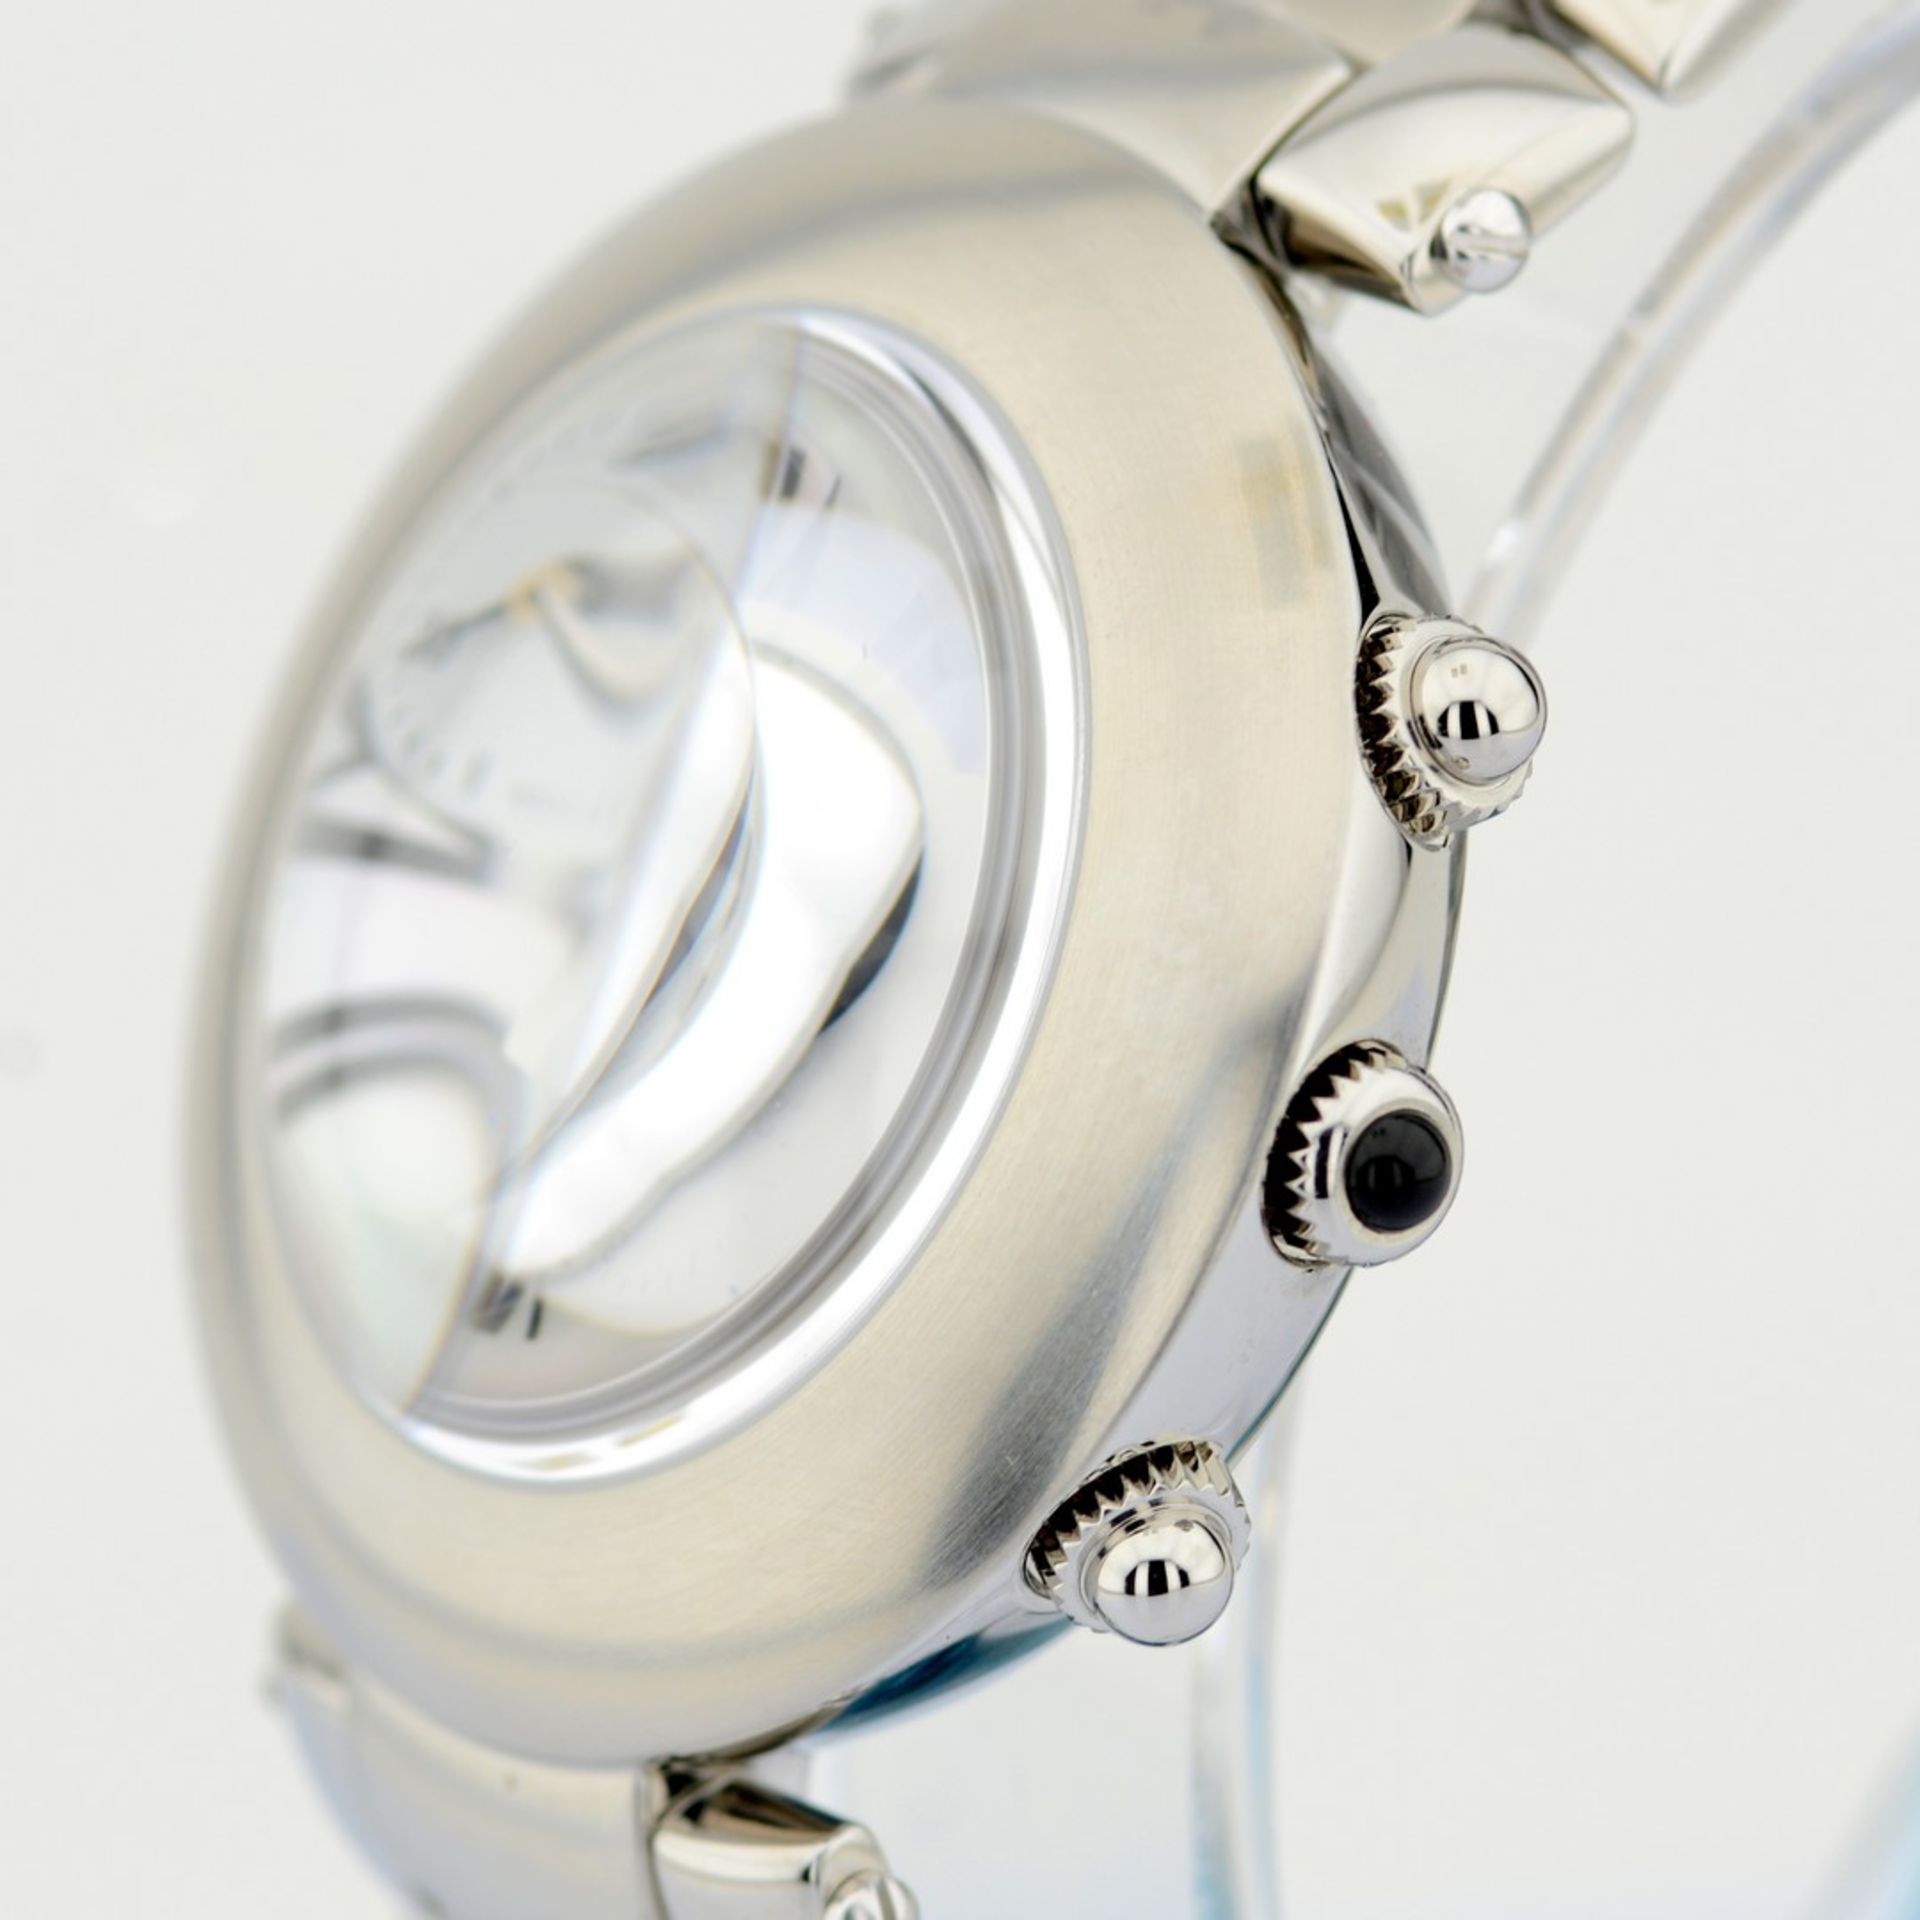 Pierre Balmain / Bubble Swiss Chronograph Date - Gentlemen's Steel Wristwatch - Image 4 of 7